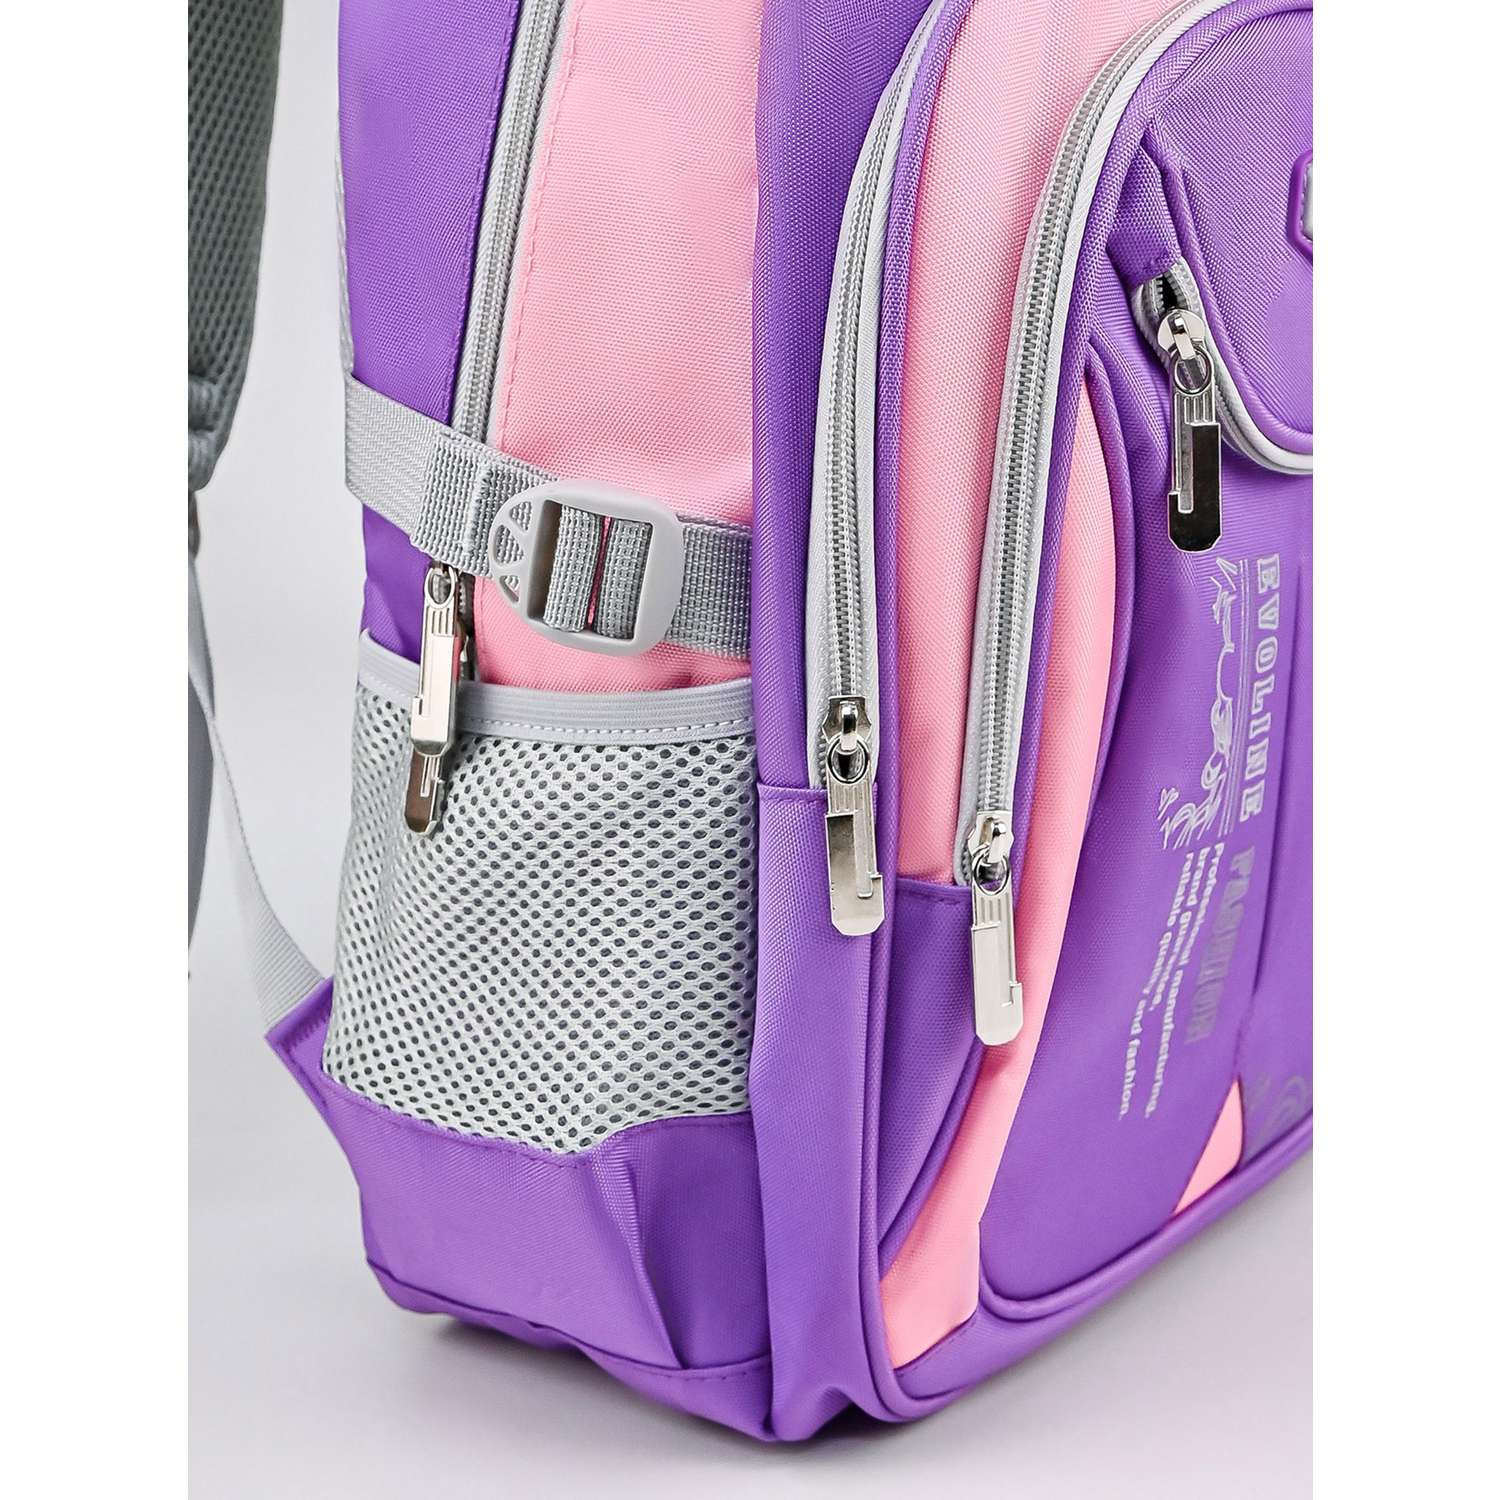 Рюкзак школьный Evoline большой сиреневый розовый EVOS-316 - фото 2